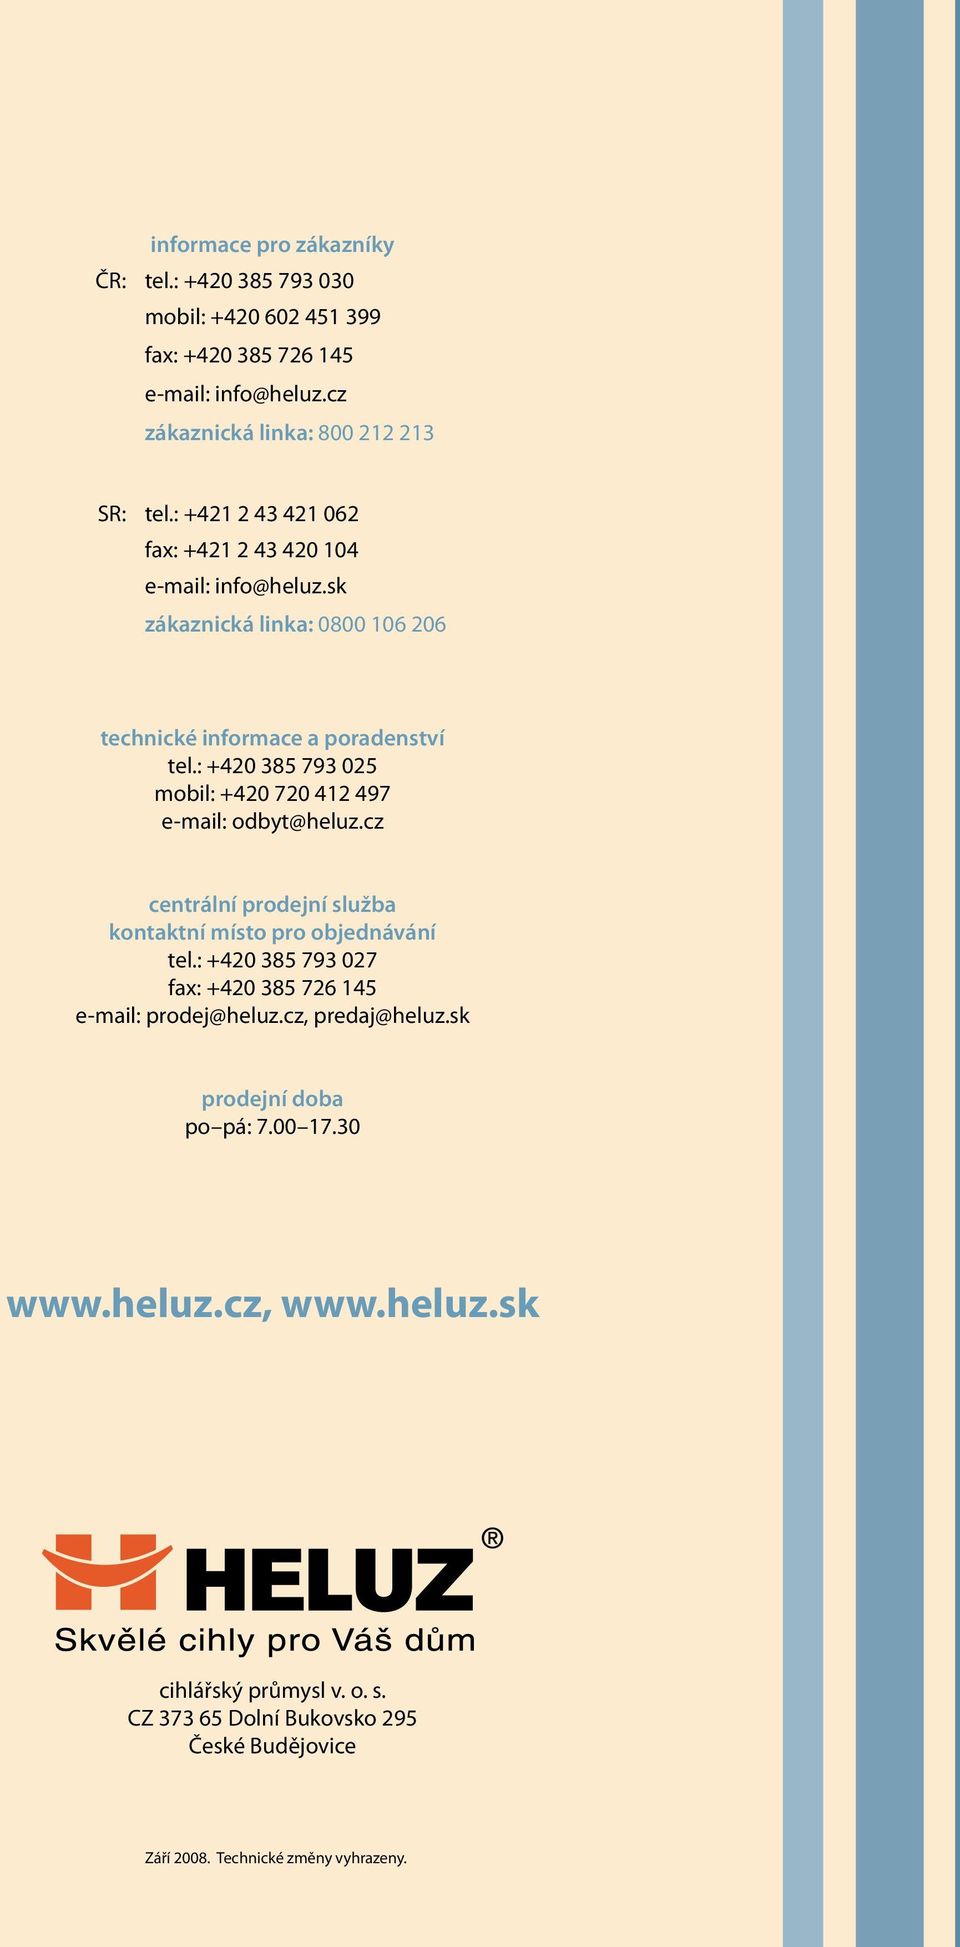 : +420 385 793 025 mobil: +420 720 412 497 e-mail: odbyt@heluz.cz centrální prodejní služba kontaktní místo pro objednávání tel.